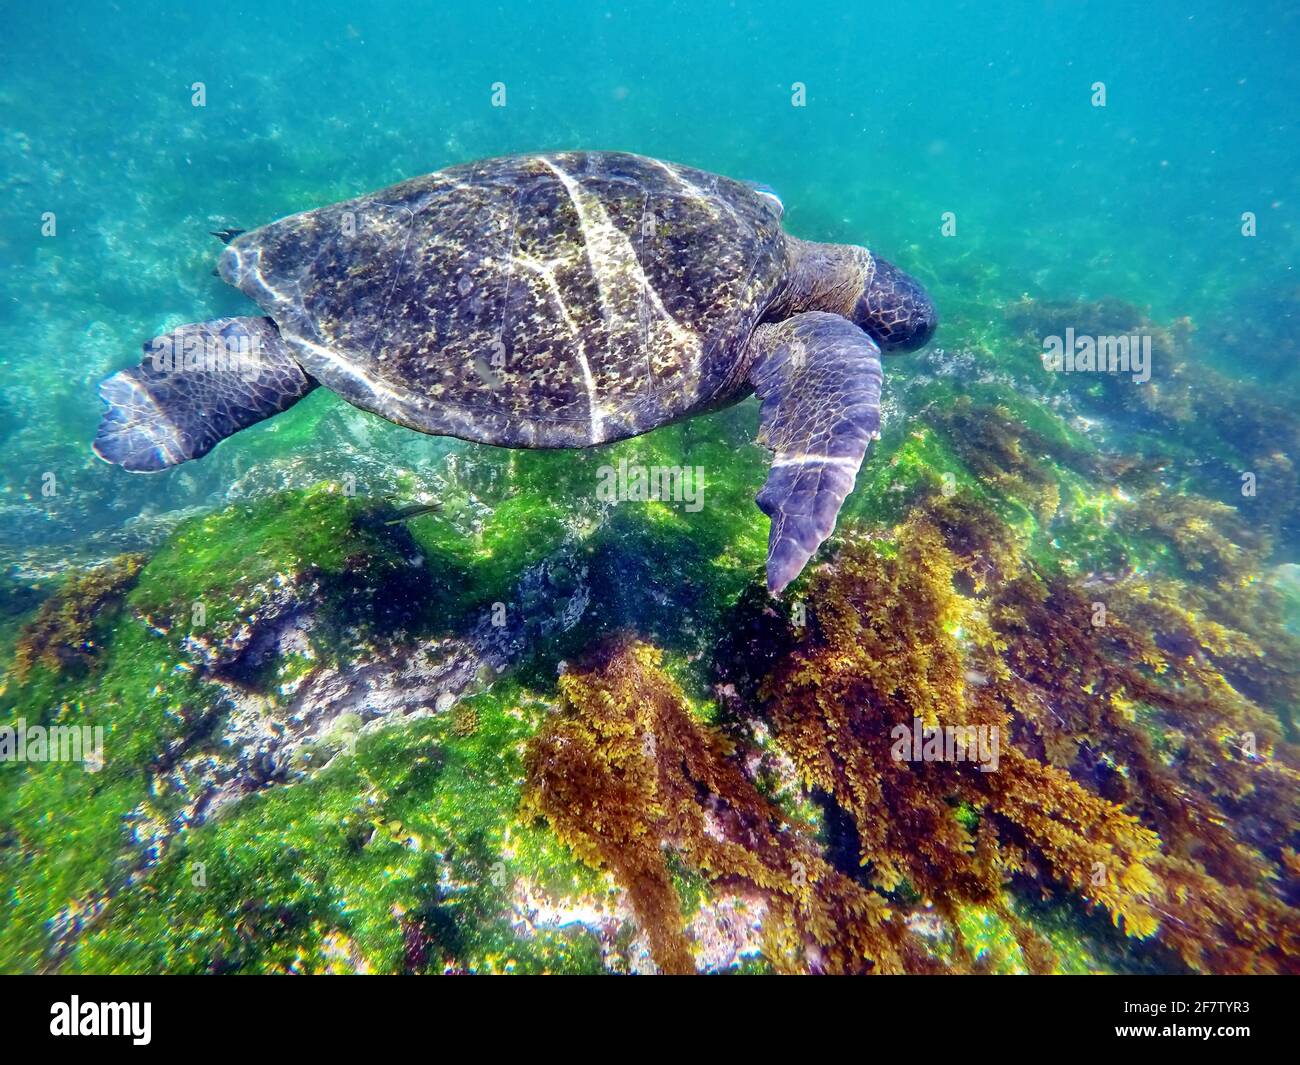 Galapagos green turtle swimming at Punta Espinoza, Fernandina Island, Galapagos, Ecuador Stock Photo